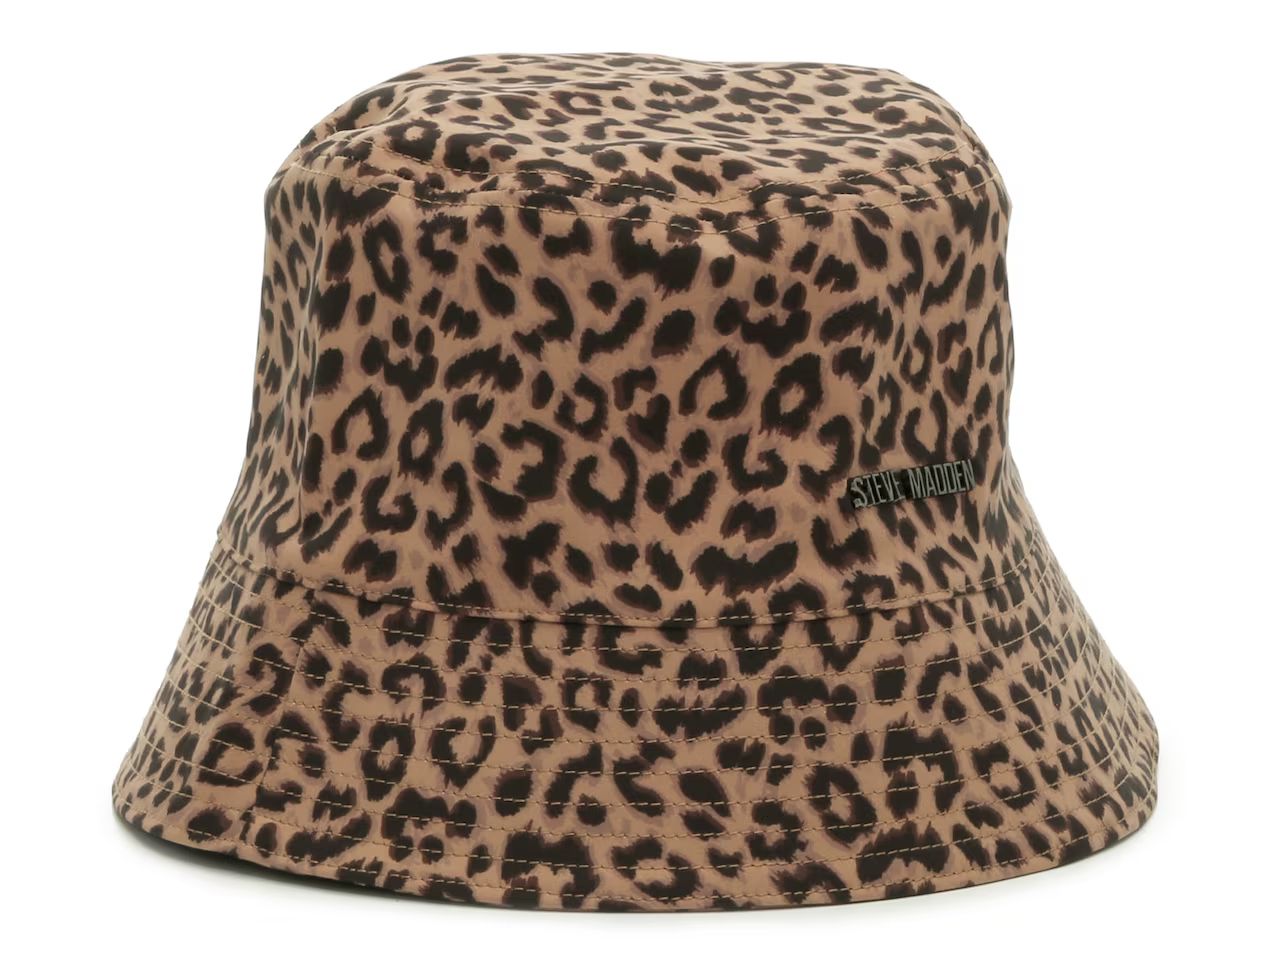 Steve Madden Leopard Bucket Hat | DSW